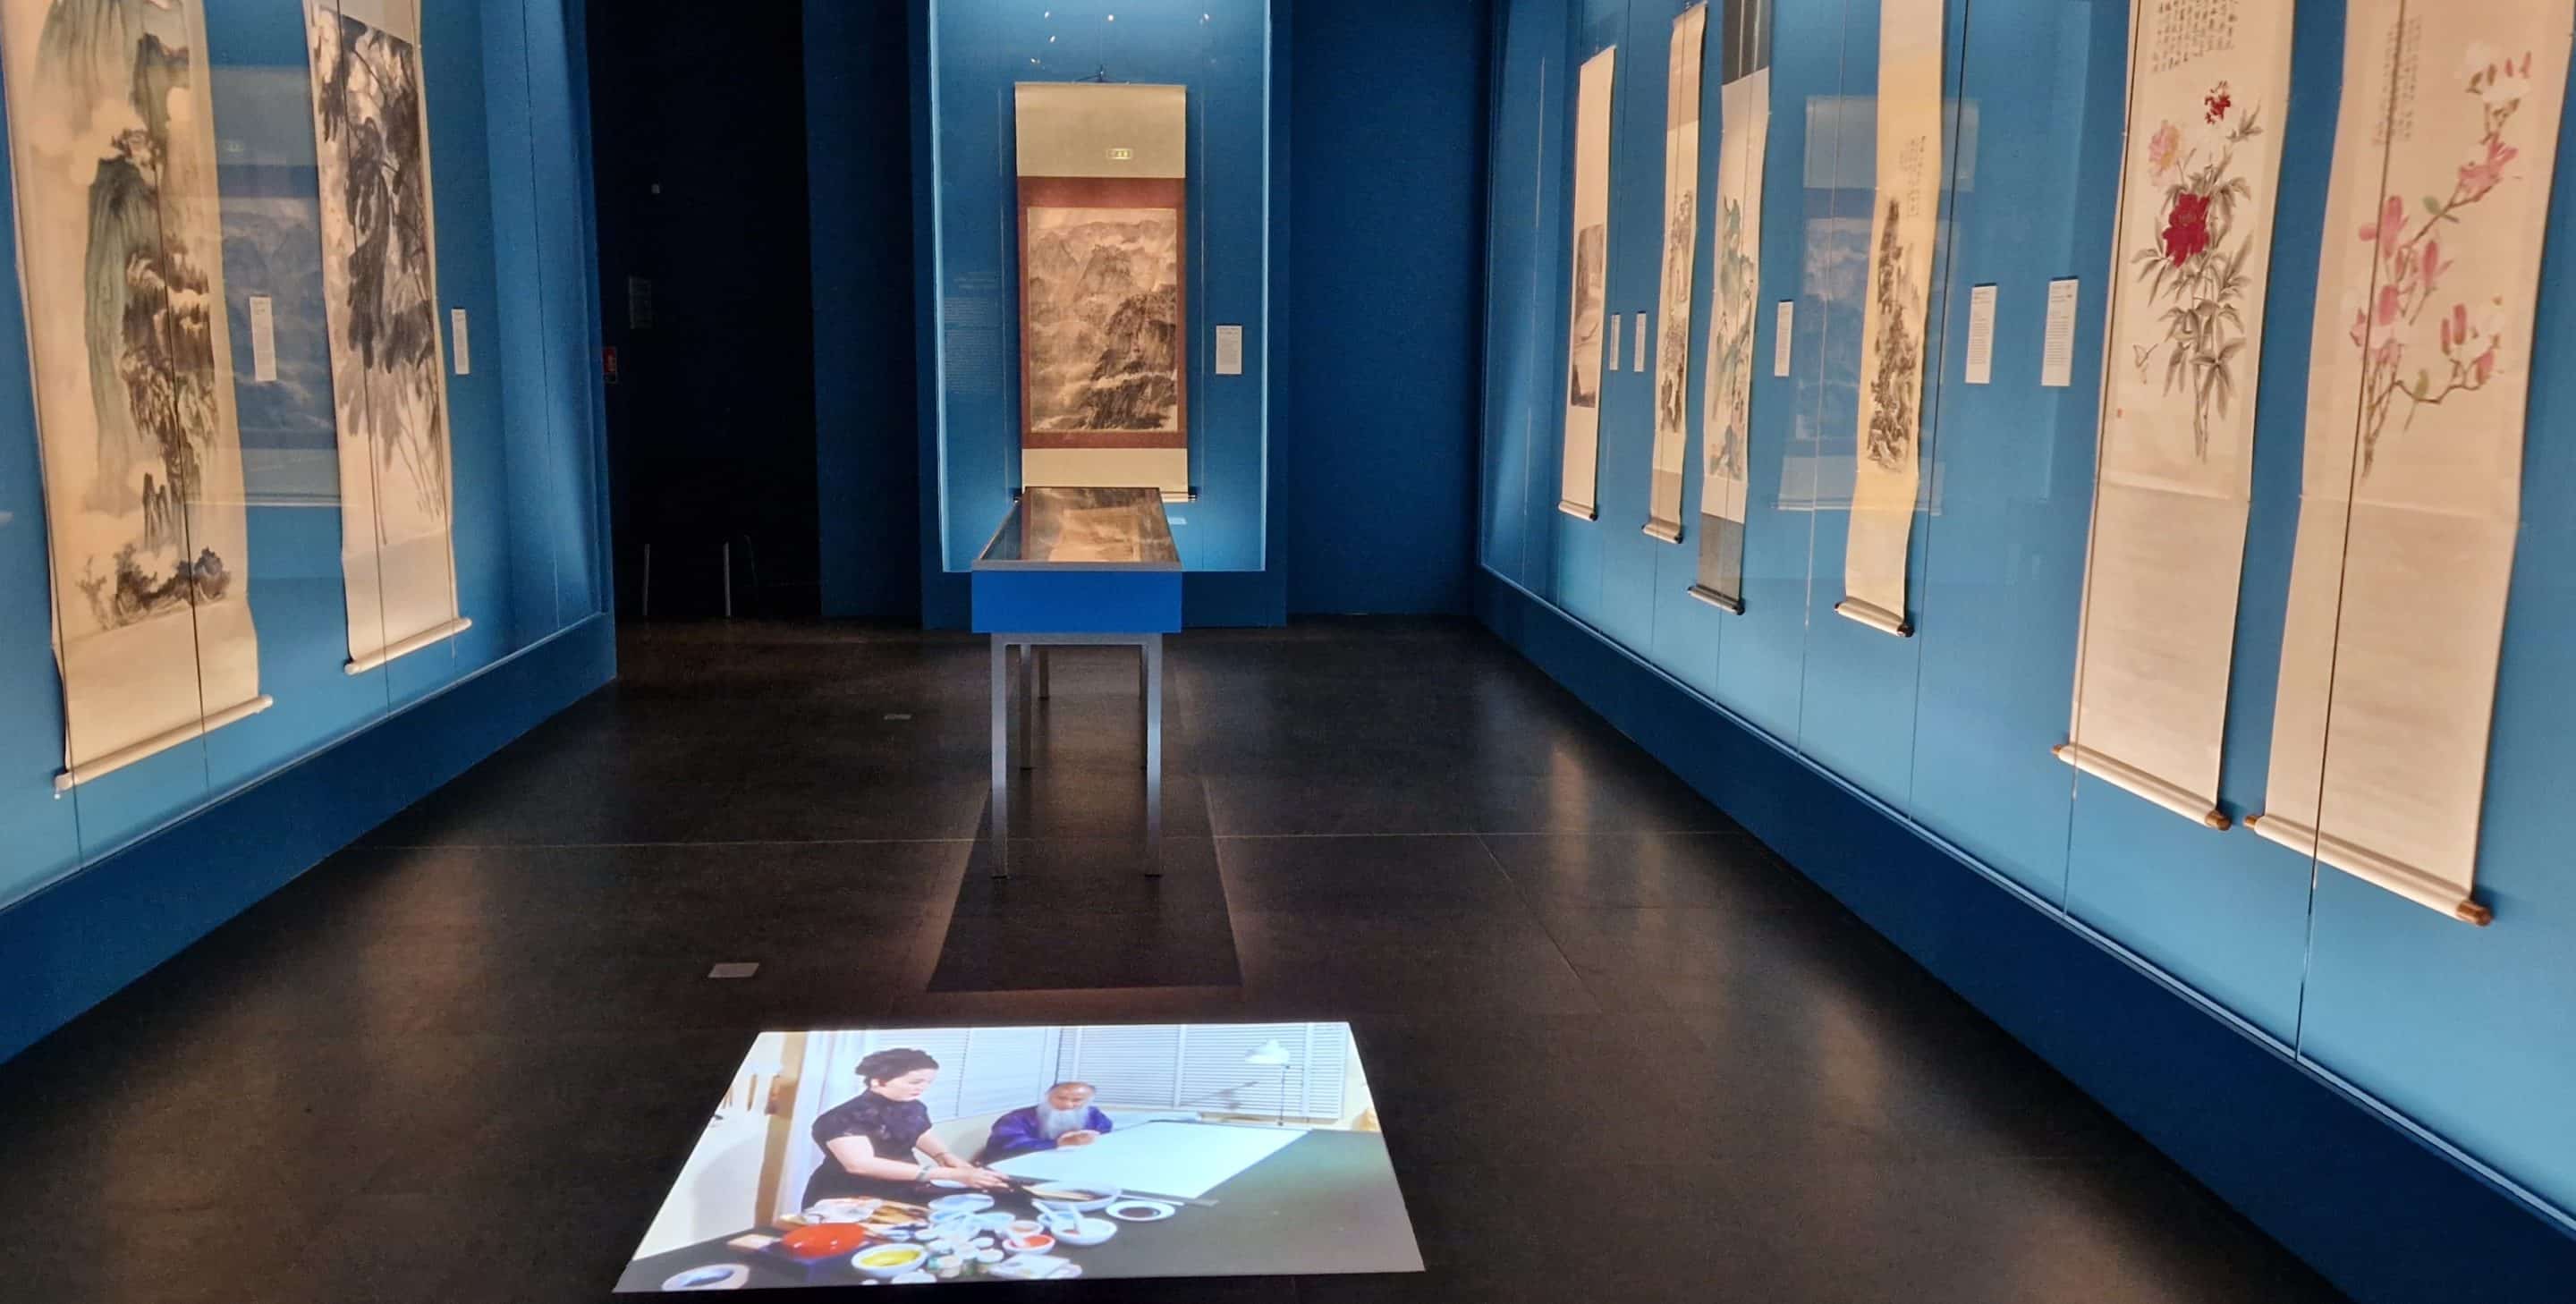 Musée national d’art moderne - Salle 26 : Jean Fautrier, Germaine Richier, Francis Bacon et Zao Wou-Ki. Droits réservés